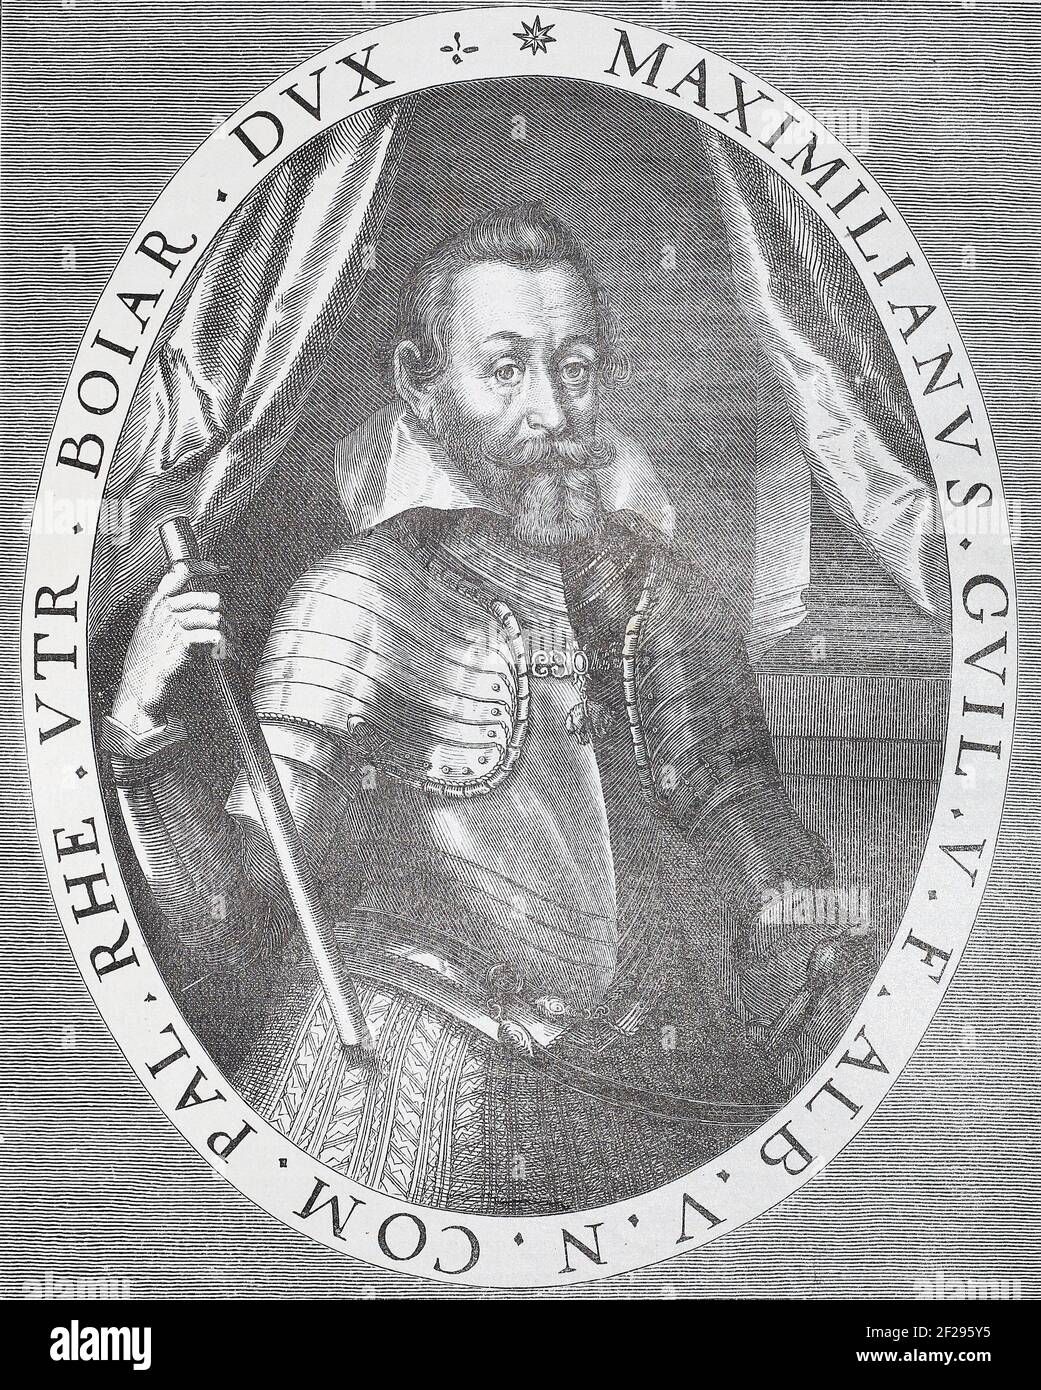 Maximilian I, électeur de Bavière. Gravure de 1620. Maximilian I (17 avril 1573 – 27 septembre 1651), parfois appelé « le Grand », membre de la Maison de Wittelsbach, a régné en tant que duc de Bavière à partir de 1597. Son règne fut marqué par la guerre de trente ans au cours de laquelle il obtint le titre de prince-électeur du Saint Empire romain au régime de Ratisbonne en 1623. Banque D'Images